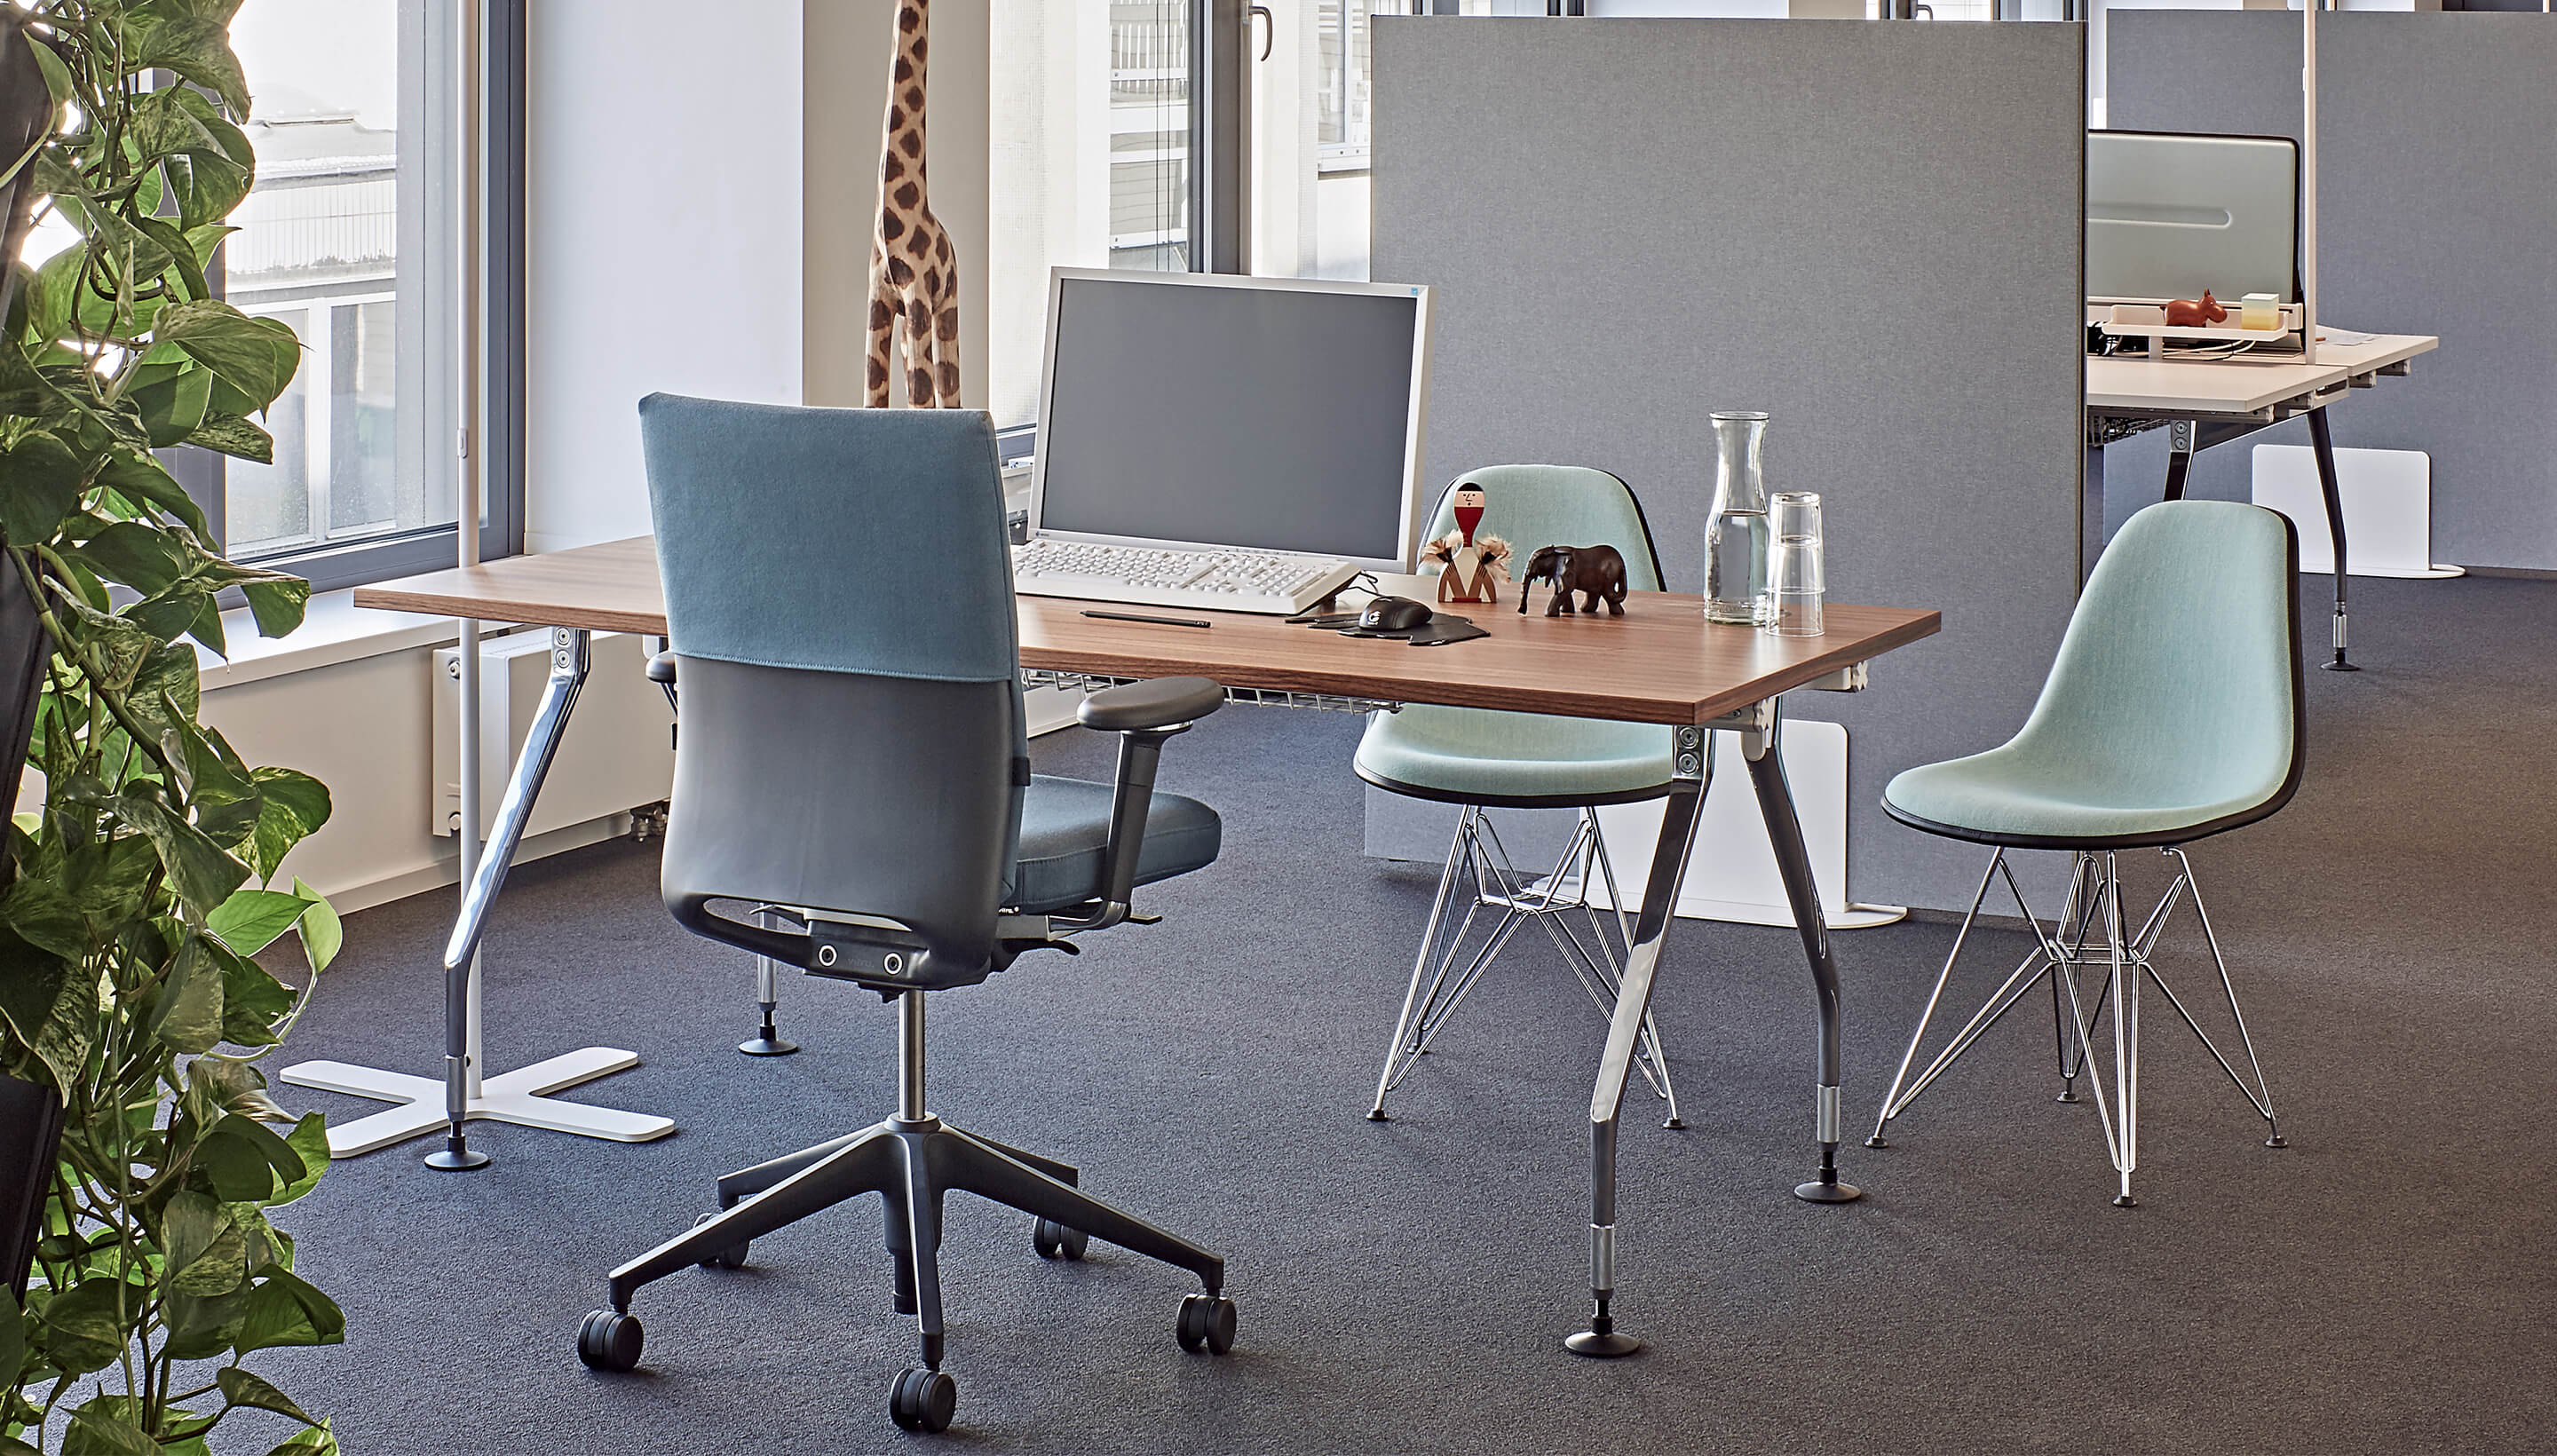 Скандинавский дизайн, стиль и универсальность мотивируют на поддержание чистоты рабочего места.